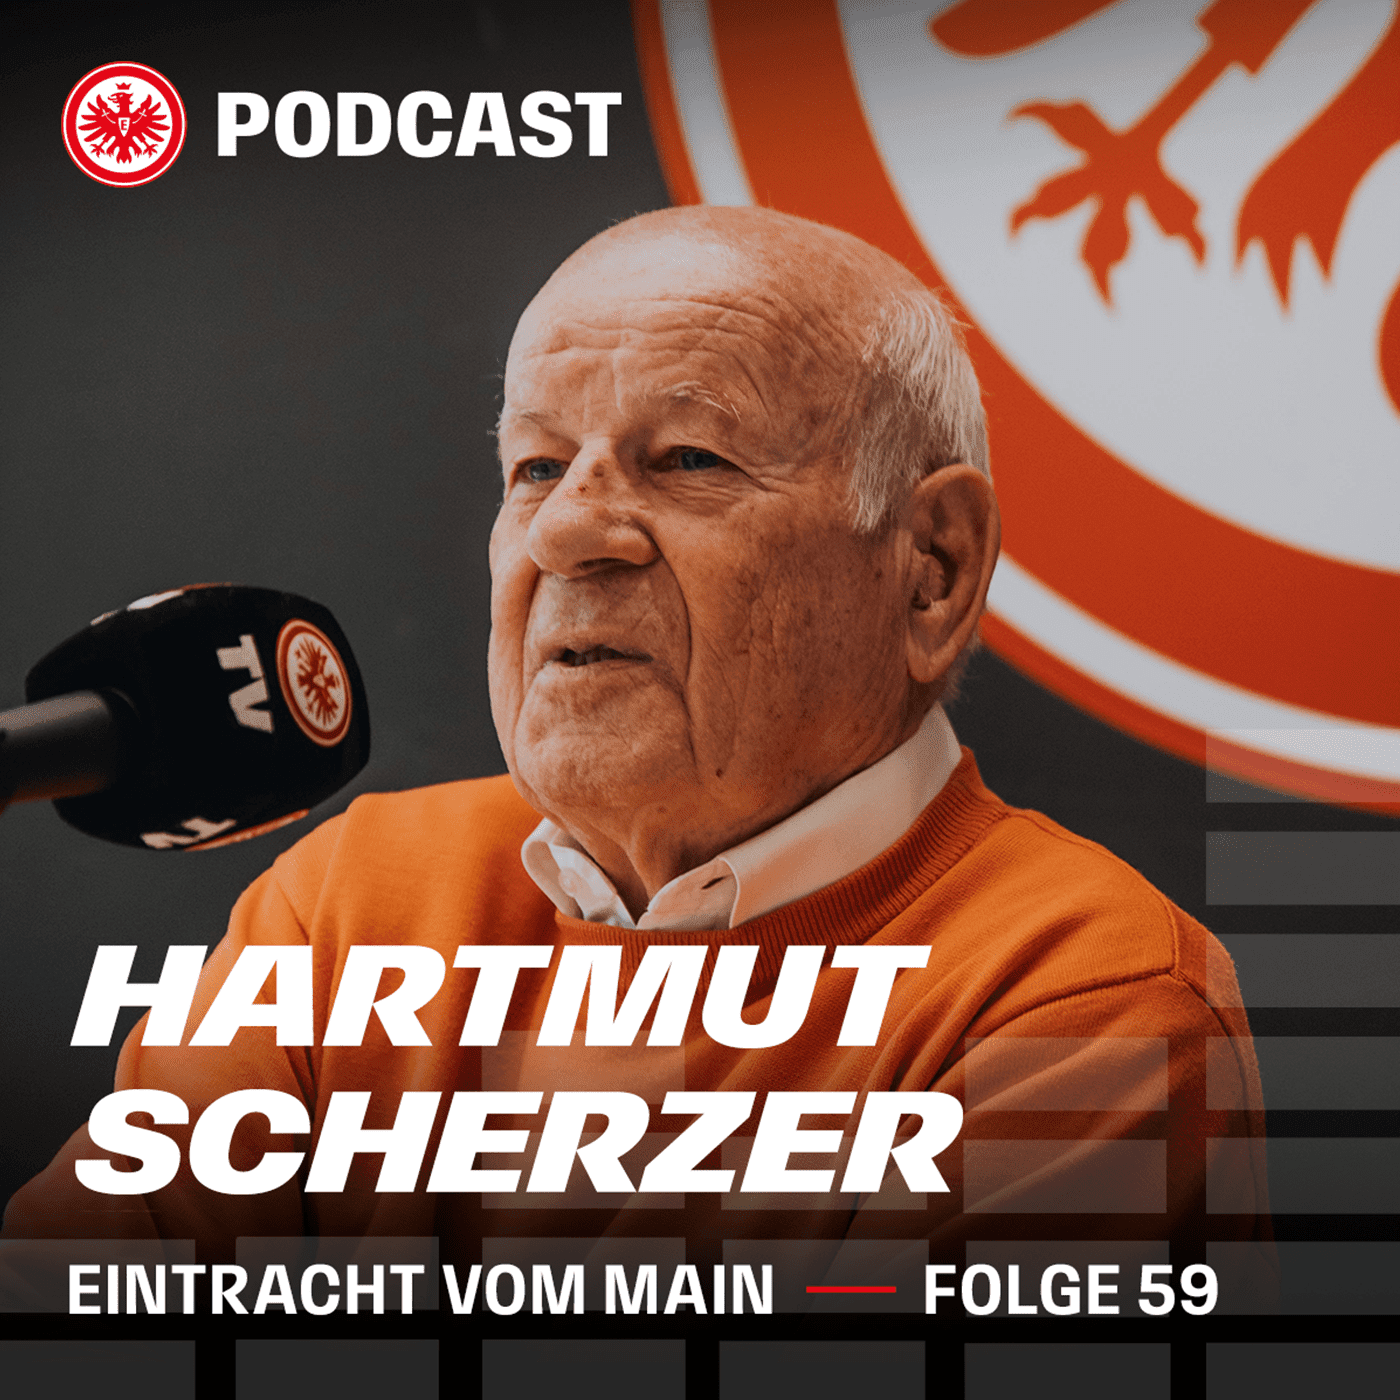 Wie ist die enge Freundschaft zu Jürgen Grabowski entstanden, Hartmut Scherzer?